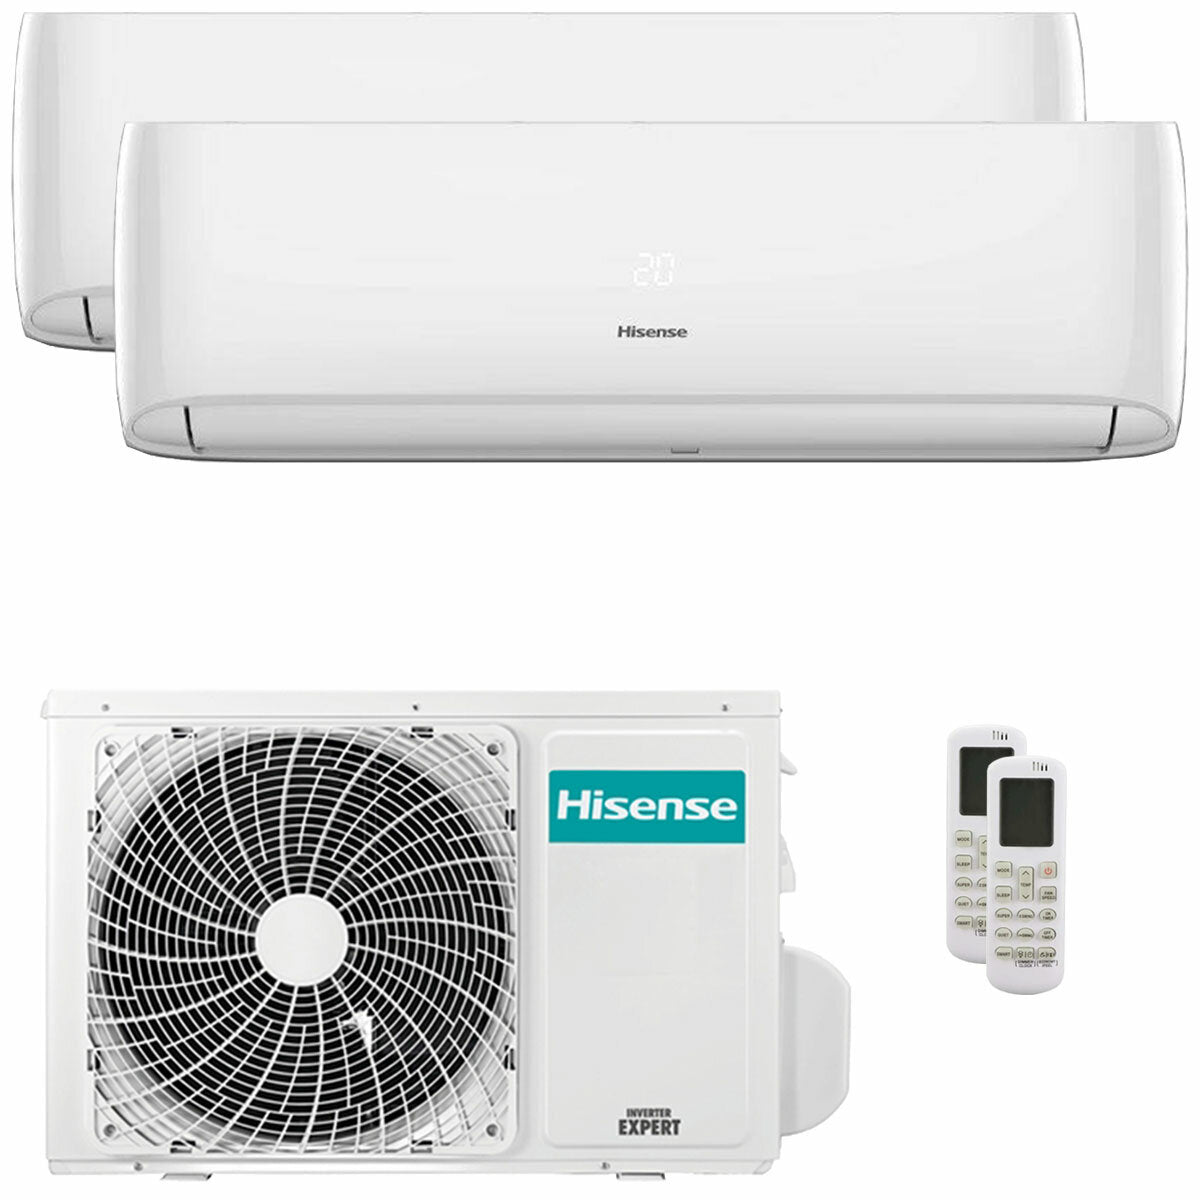 Hisense Hi-Comfort climatiseur double split 7000+18000 BTU onduleur A++ wifi unité extérieure 5,5 kW